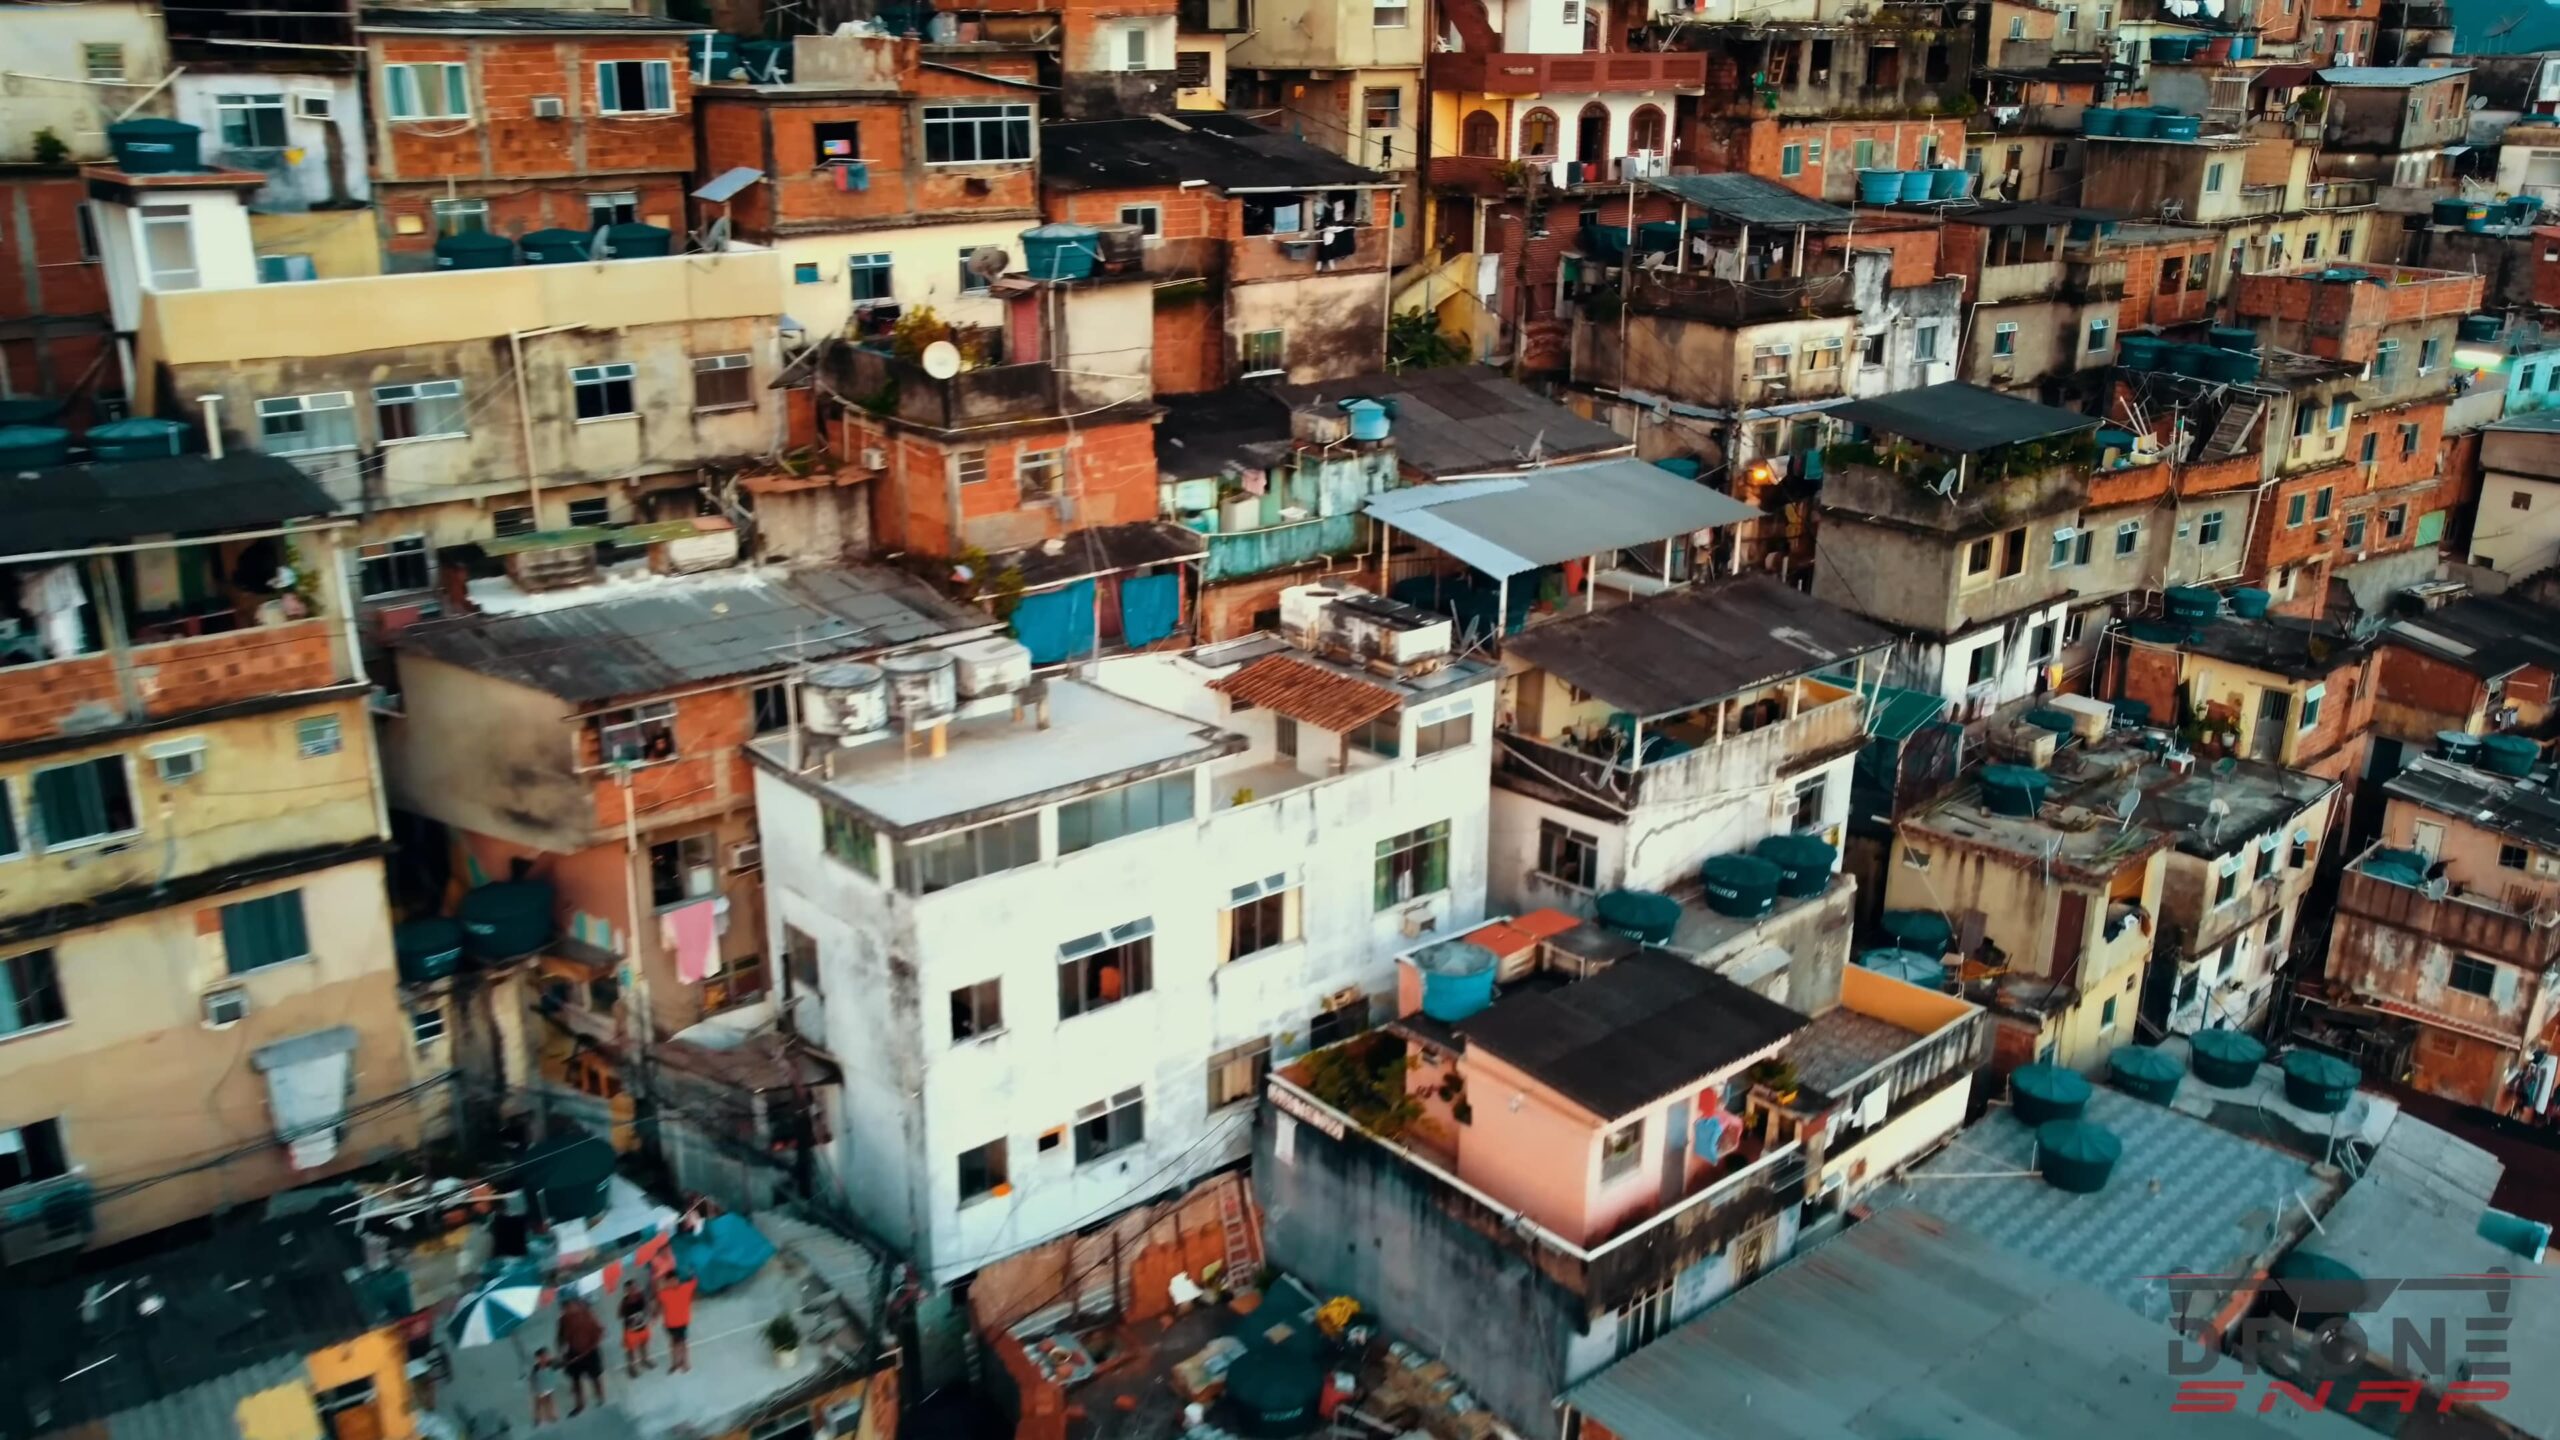 Rio de Janeiro brazil Favela - the current dangers of neighbourhoods-min